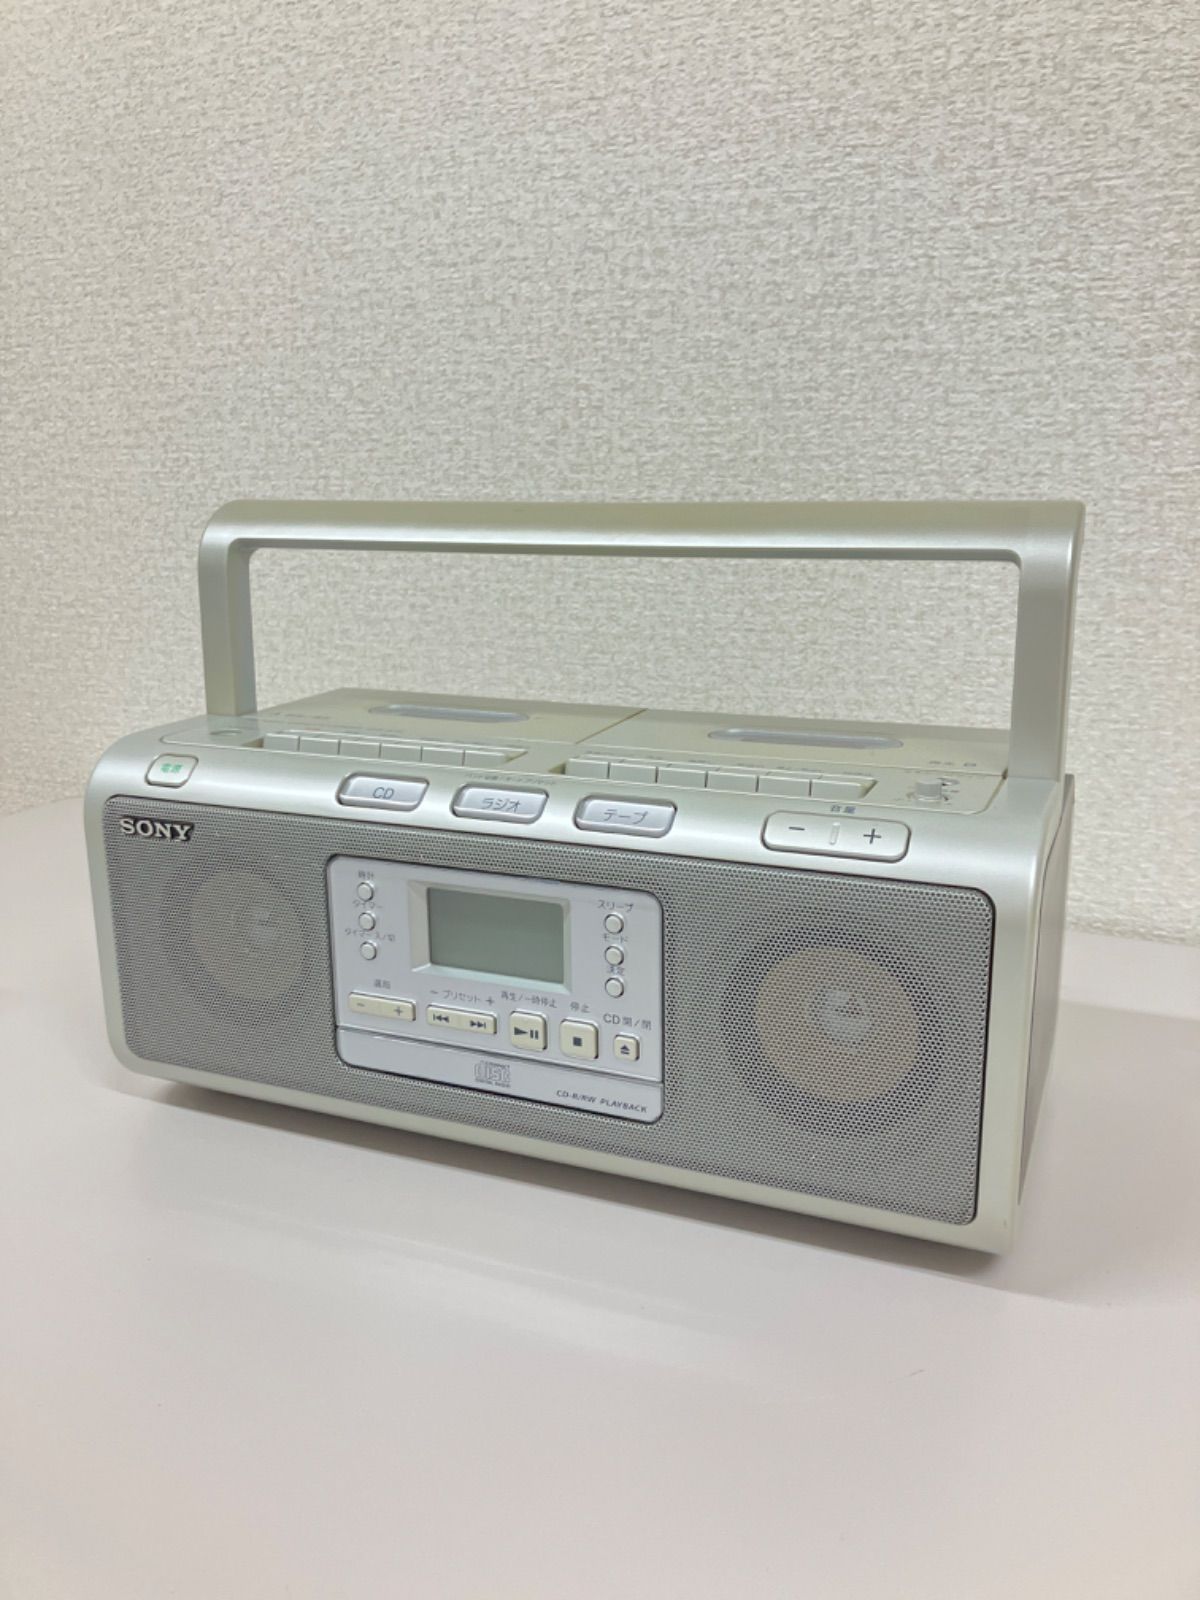 SONY CFD-W78(S)ソニーCD ダブルラジカセ - ラジオ